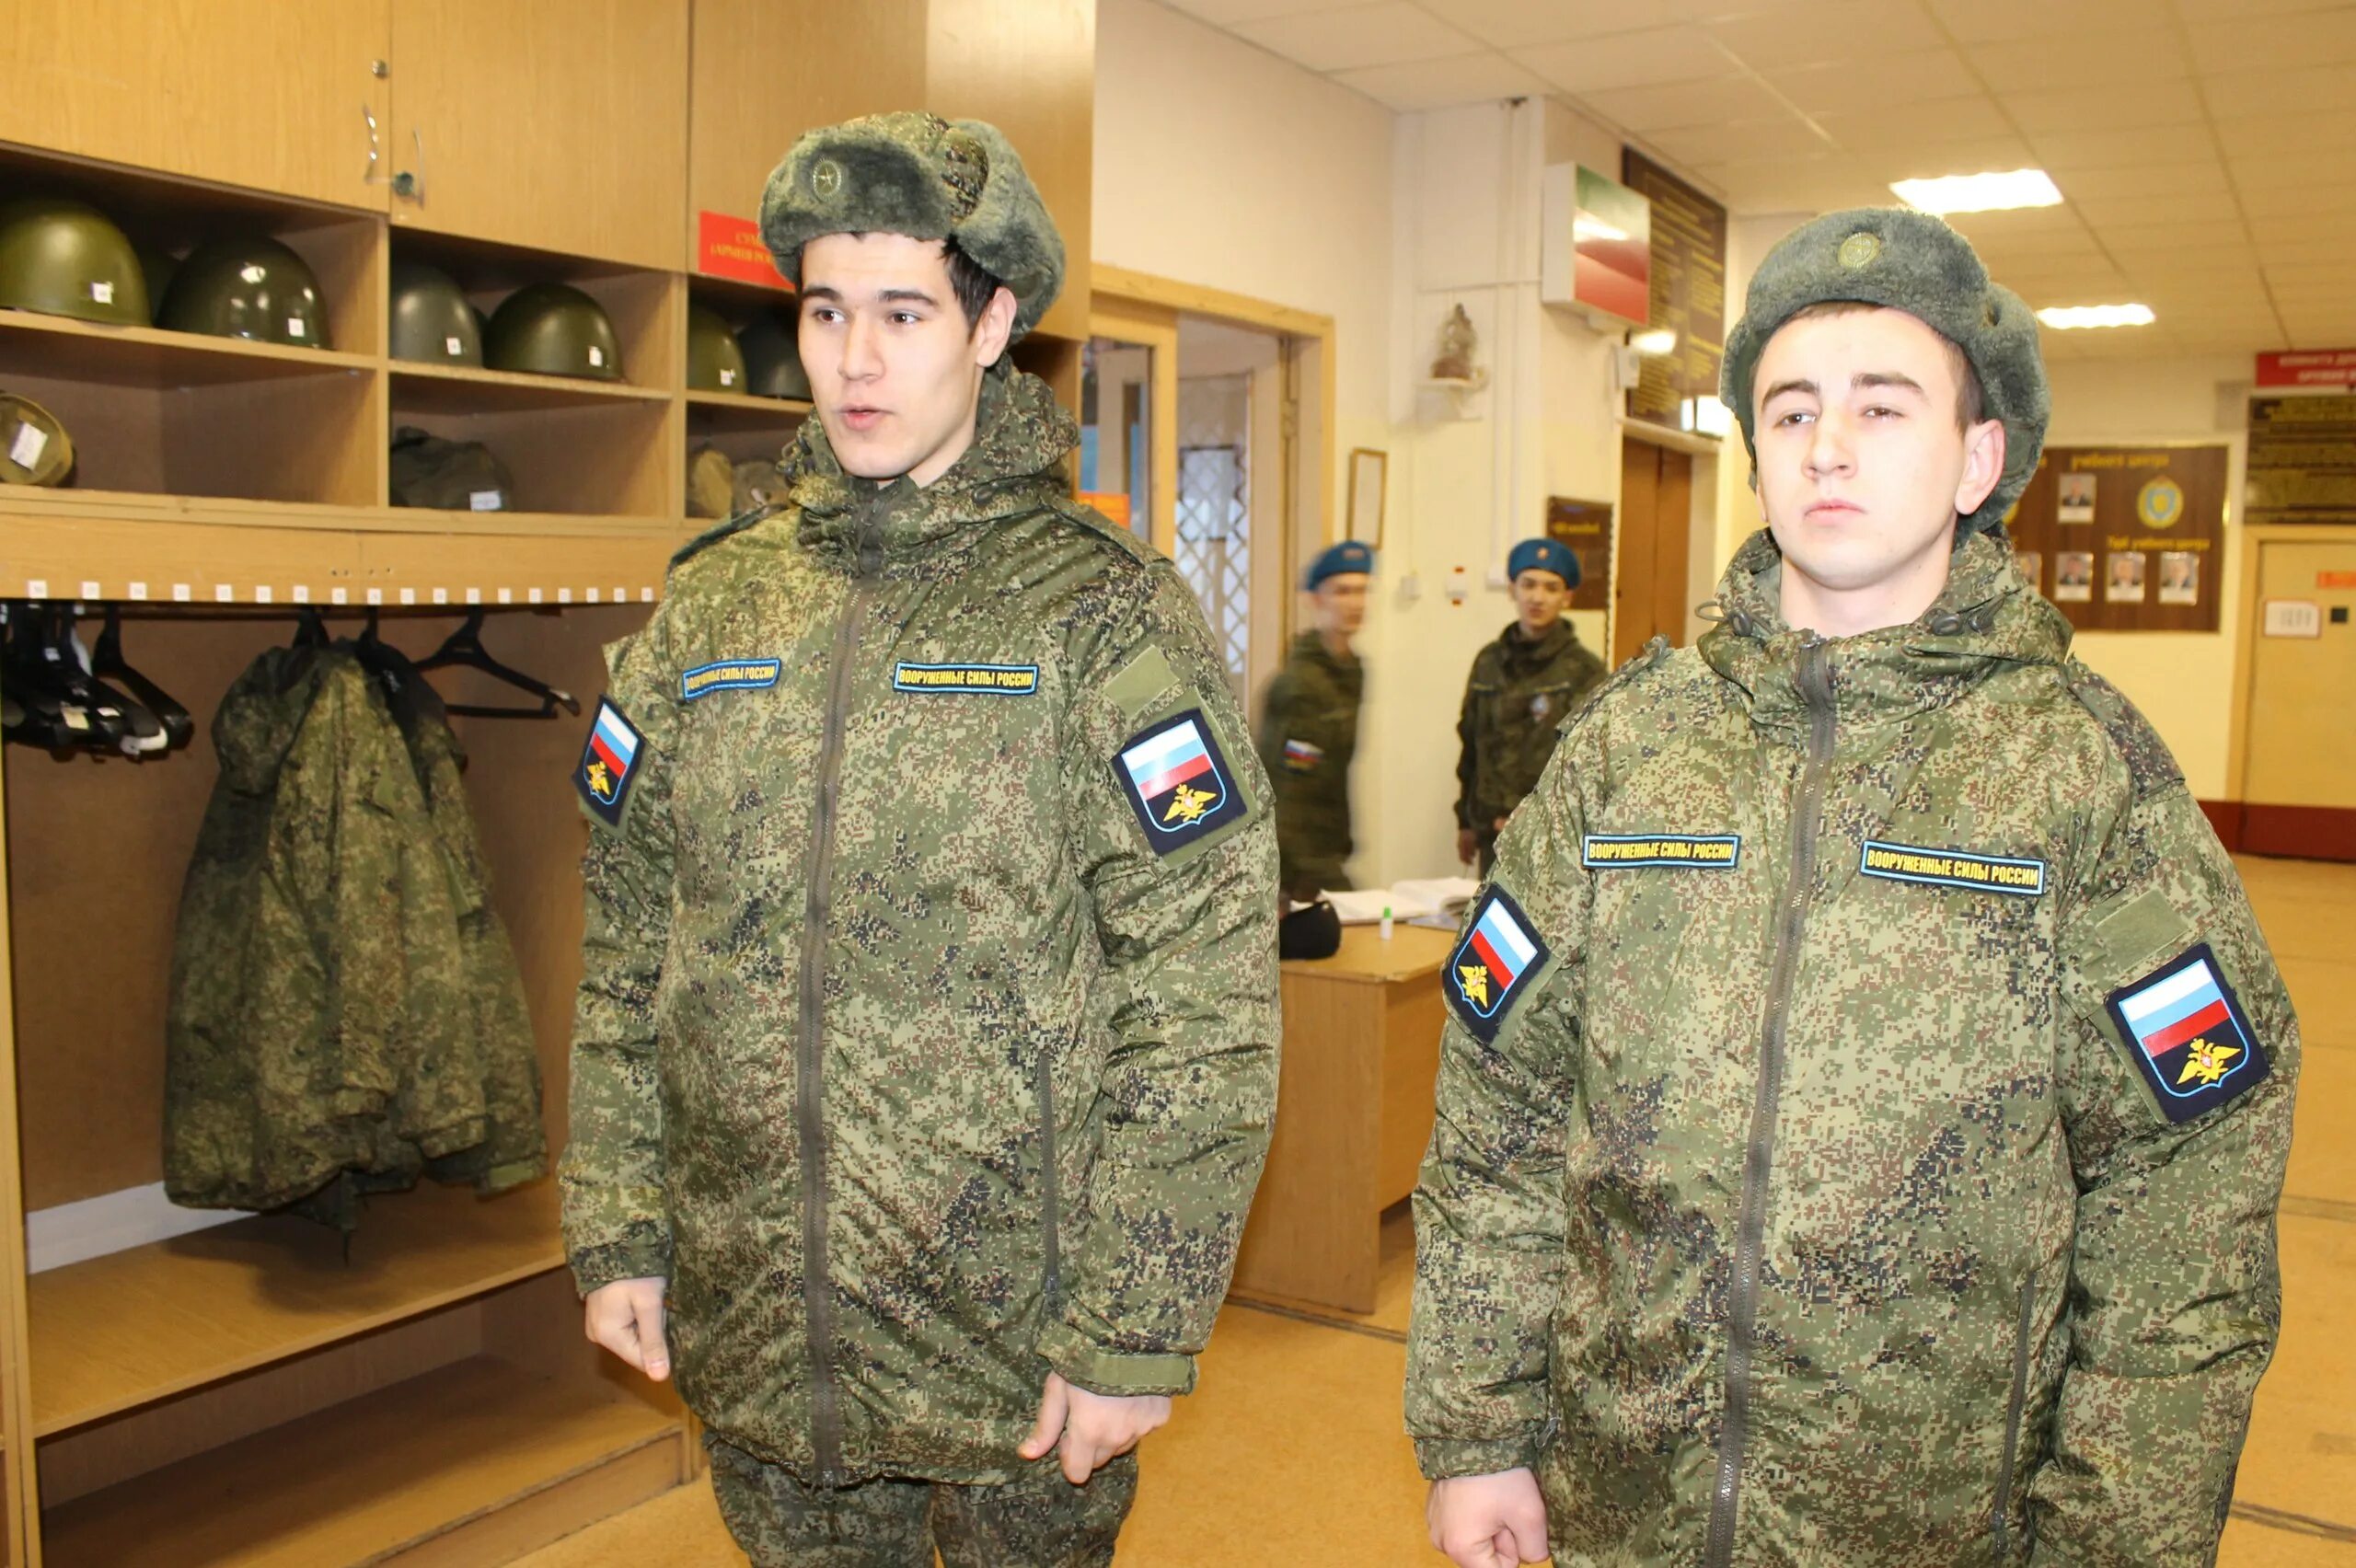 Какая армия в белгороде